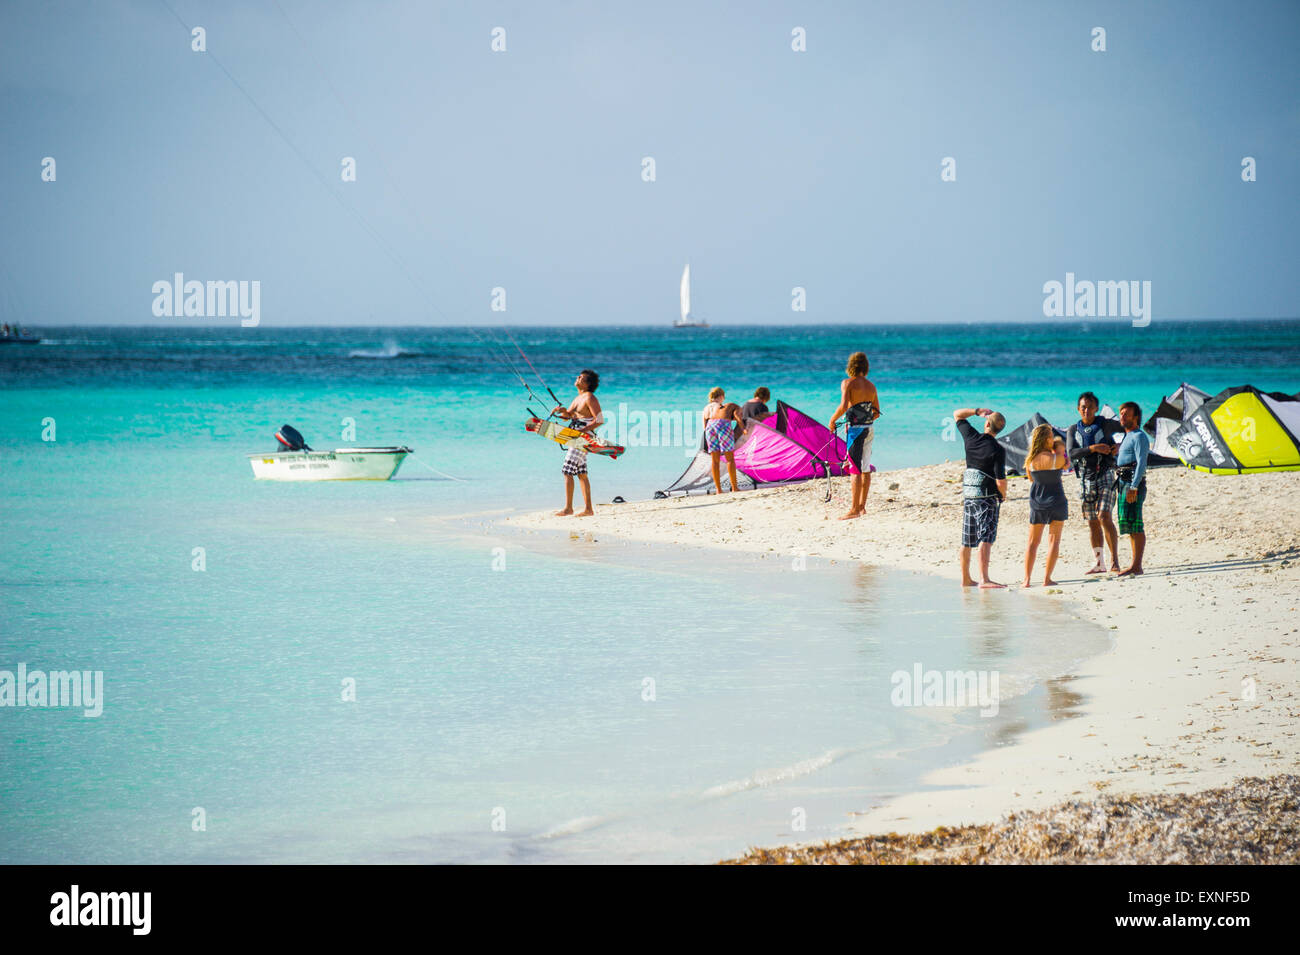 Kitesurfen in Aruba Stockfoto